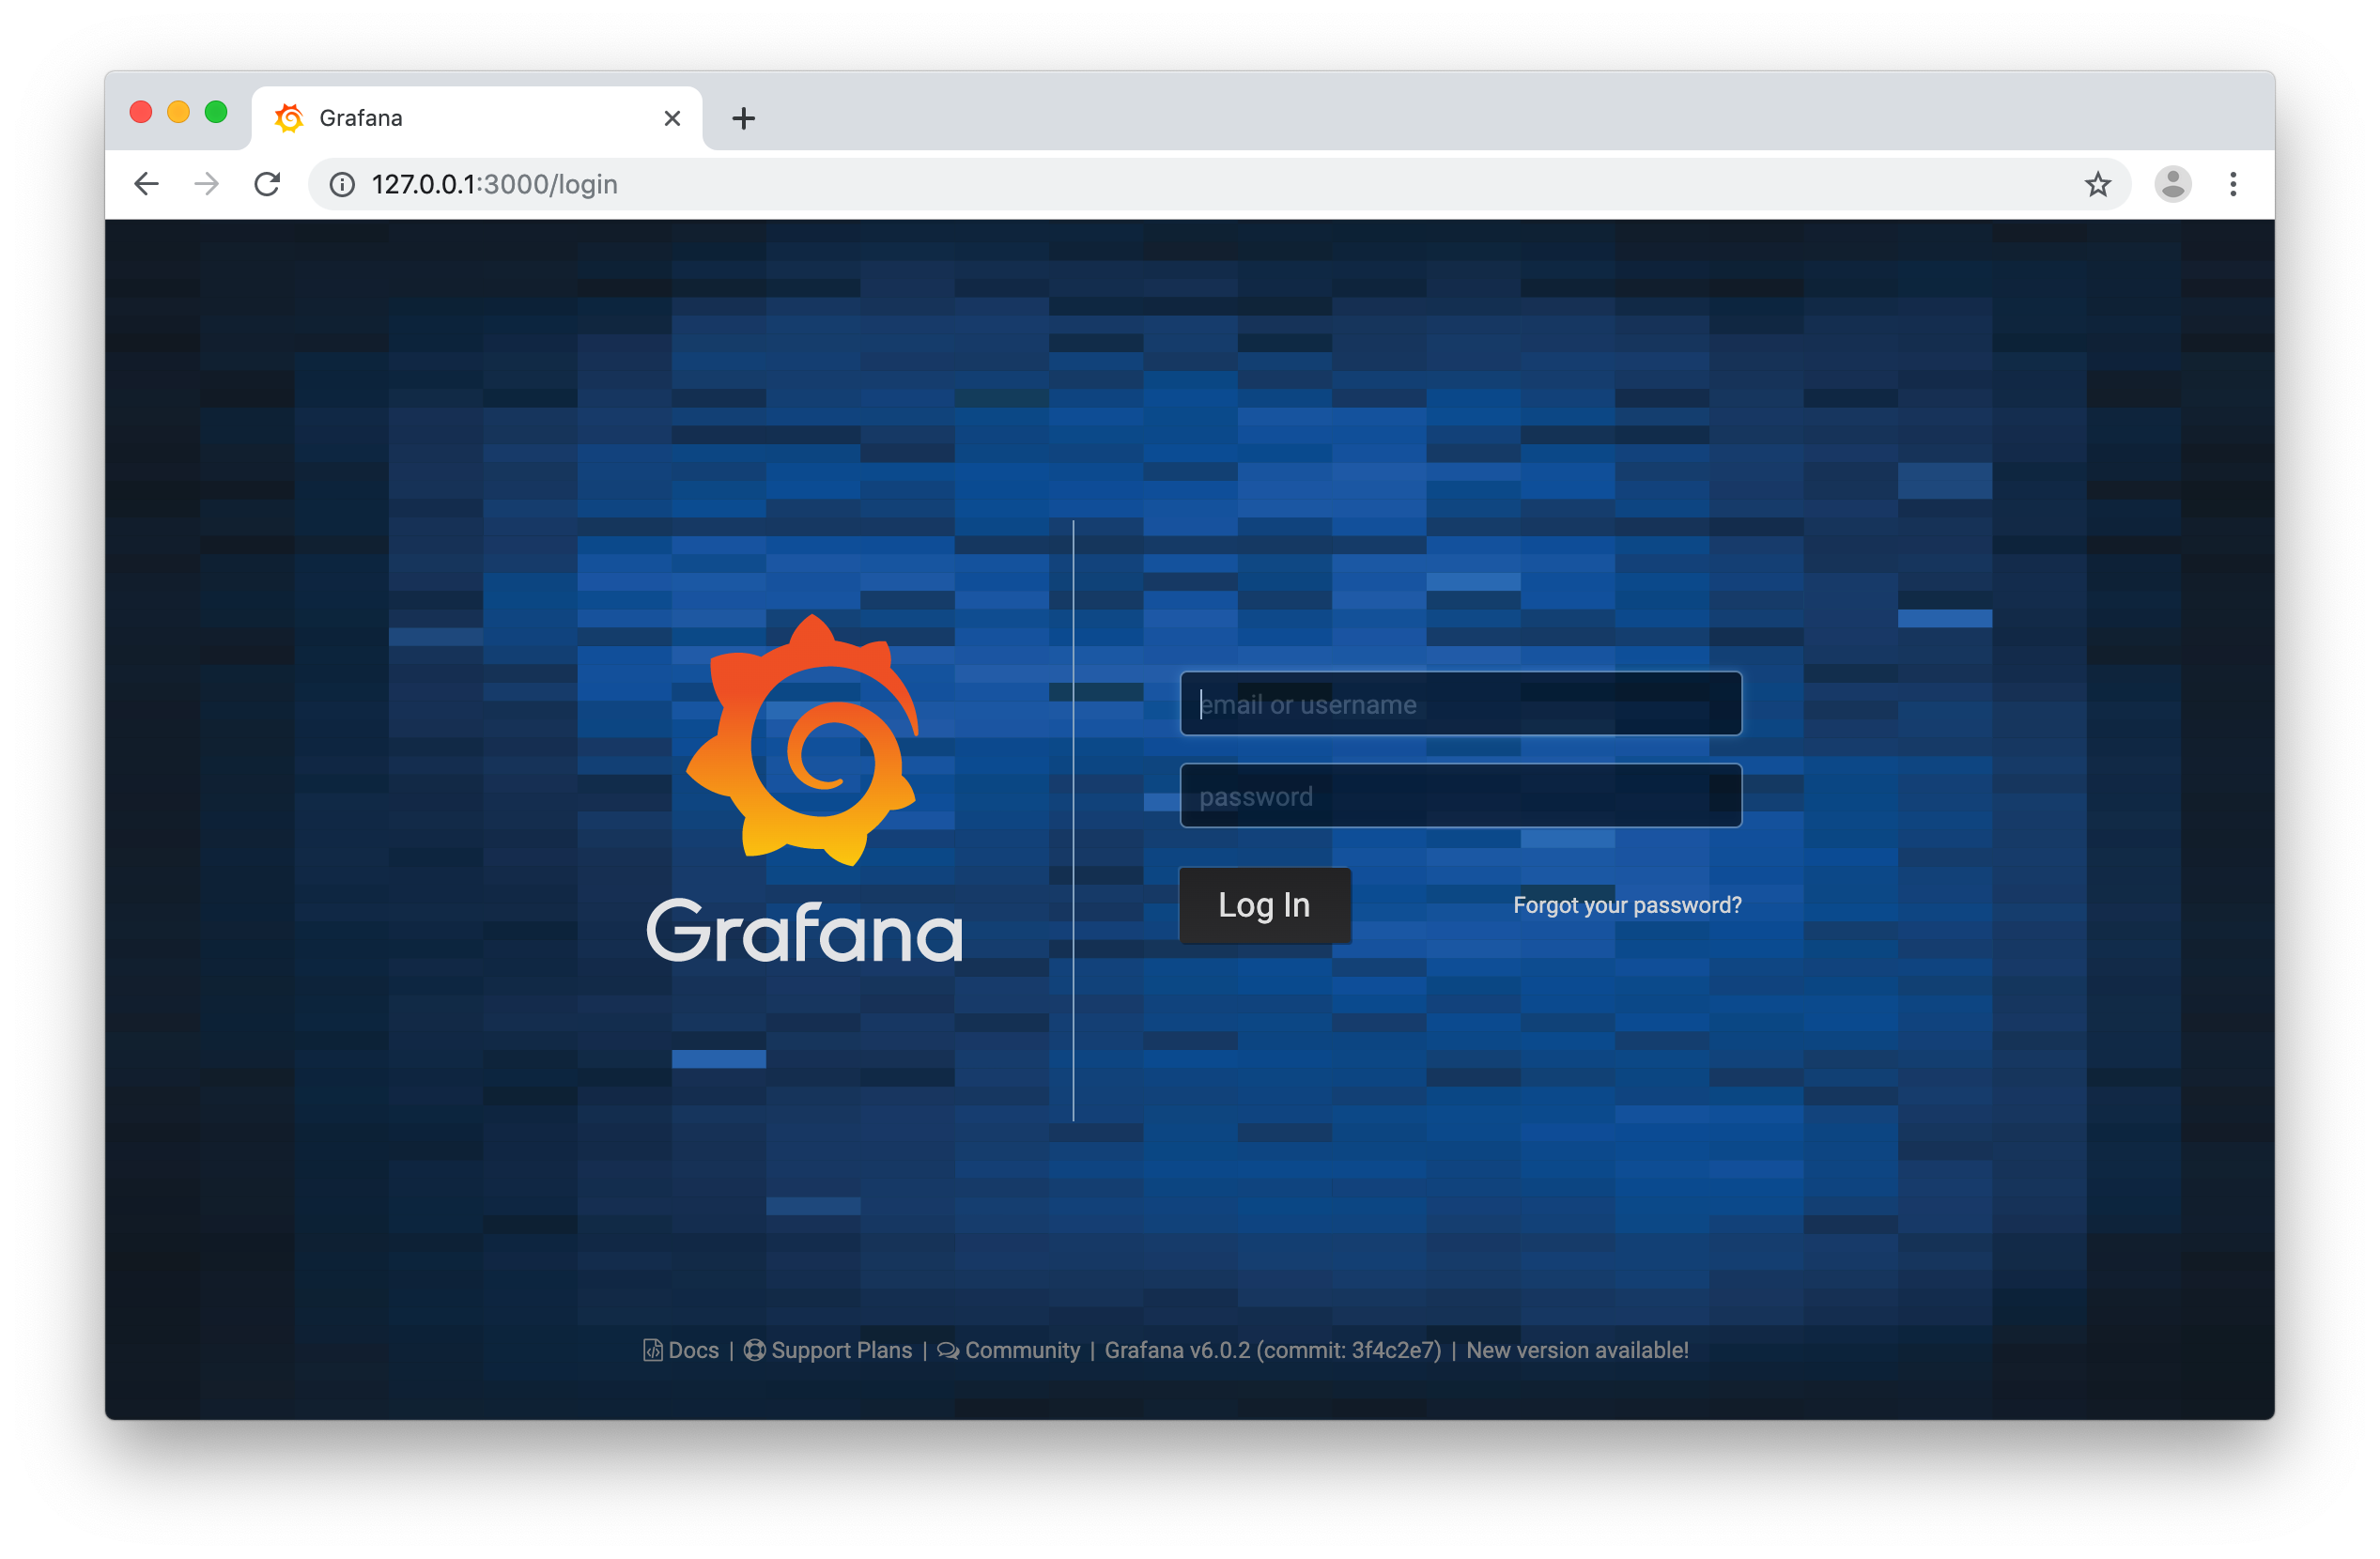 Grafana - Login Screen